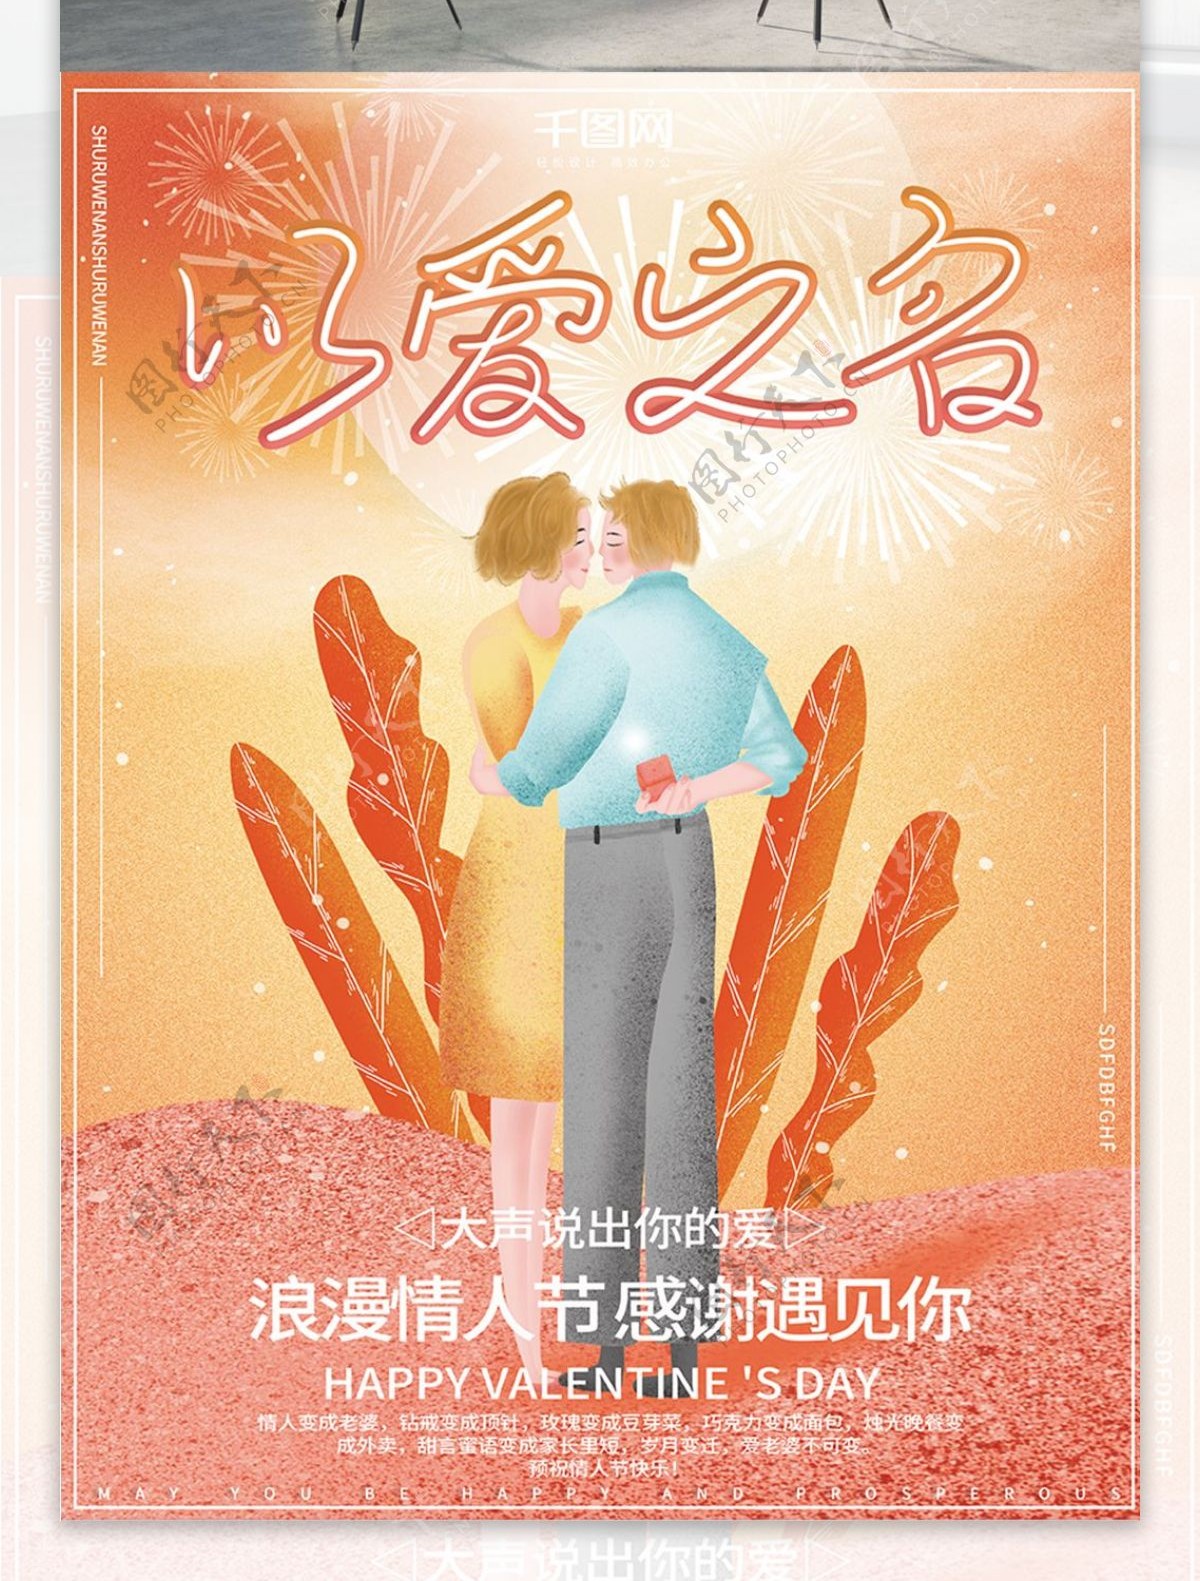 原创插画唯美梦幻浪漫2.14情人节日海报